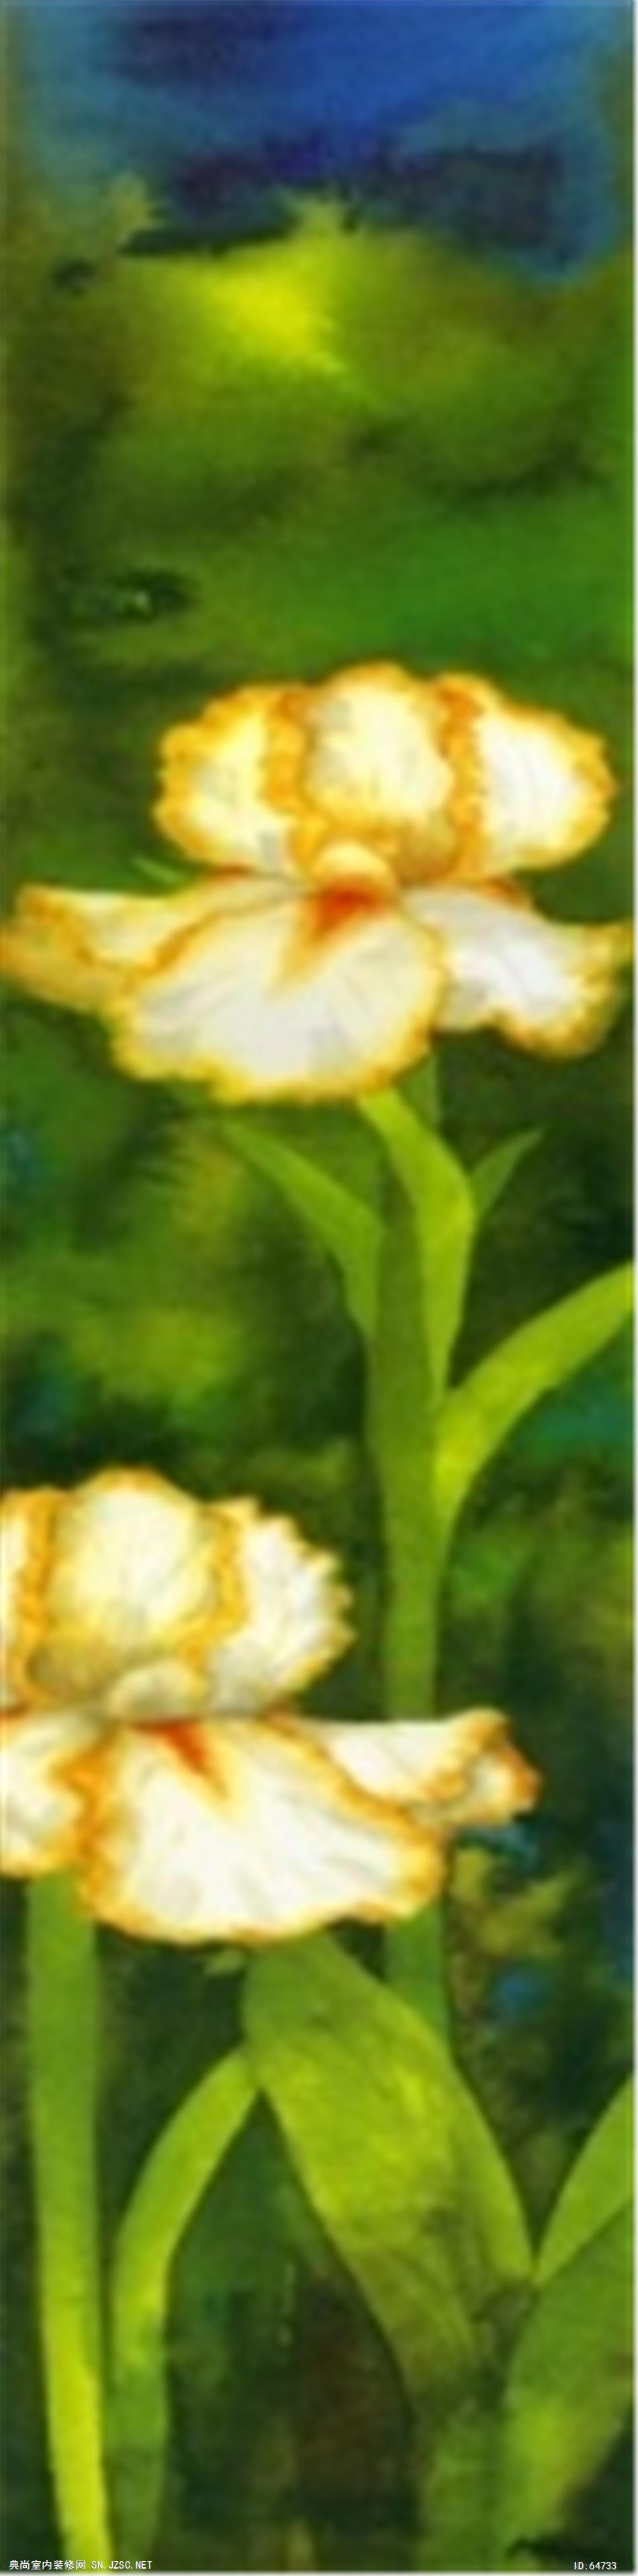 花卉画 (1020)